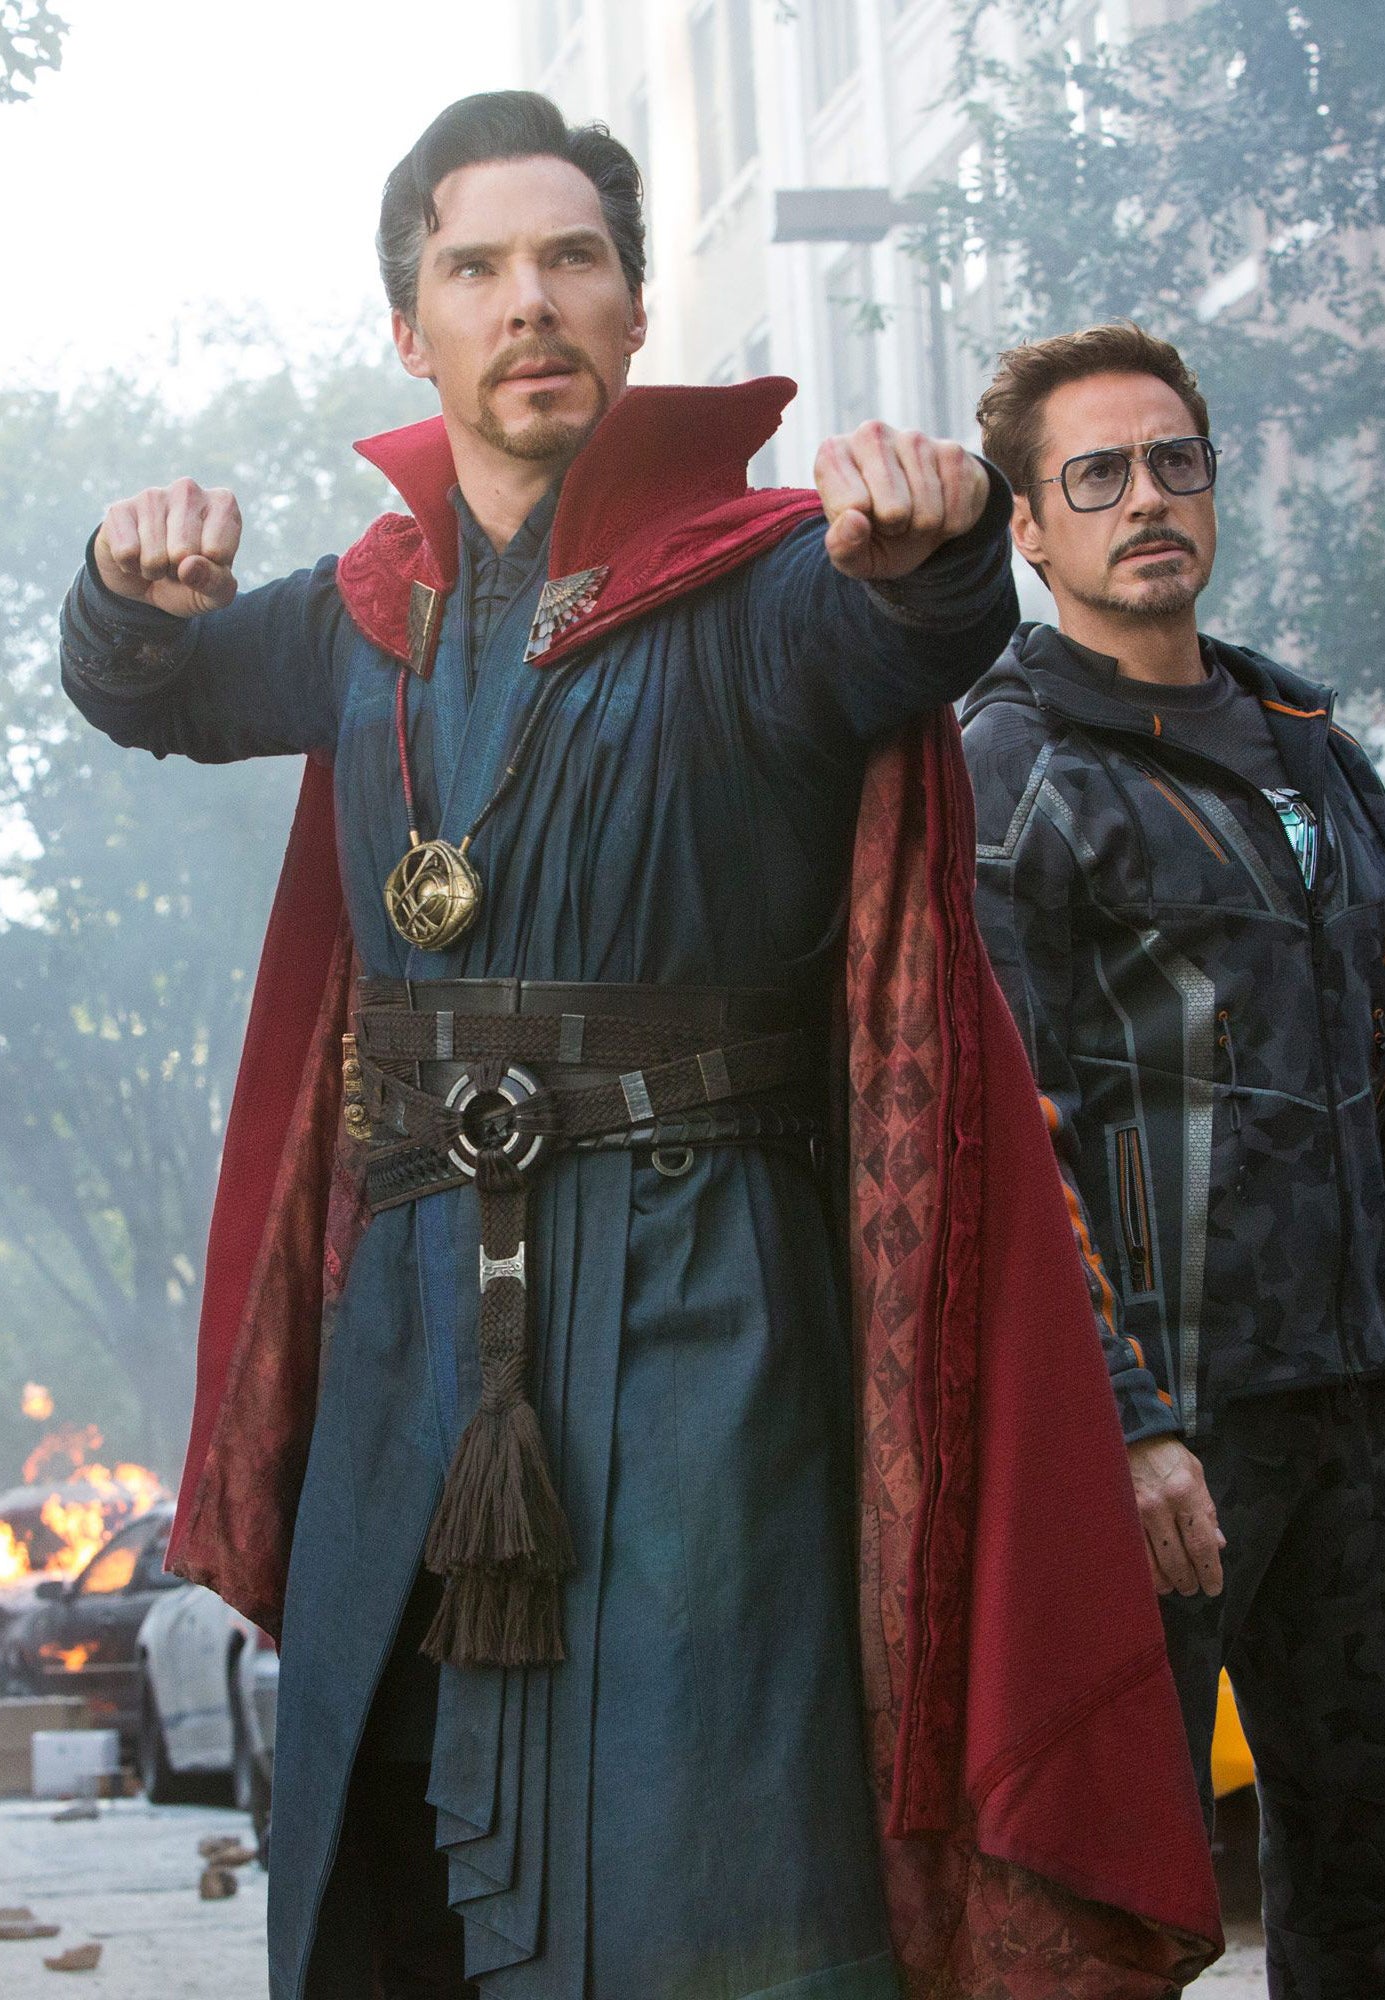 Cumberbatch as Doctor Strange, alongside Robert Downey Jr, in Avengers: Infinity War